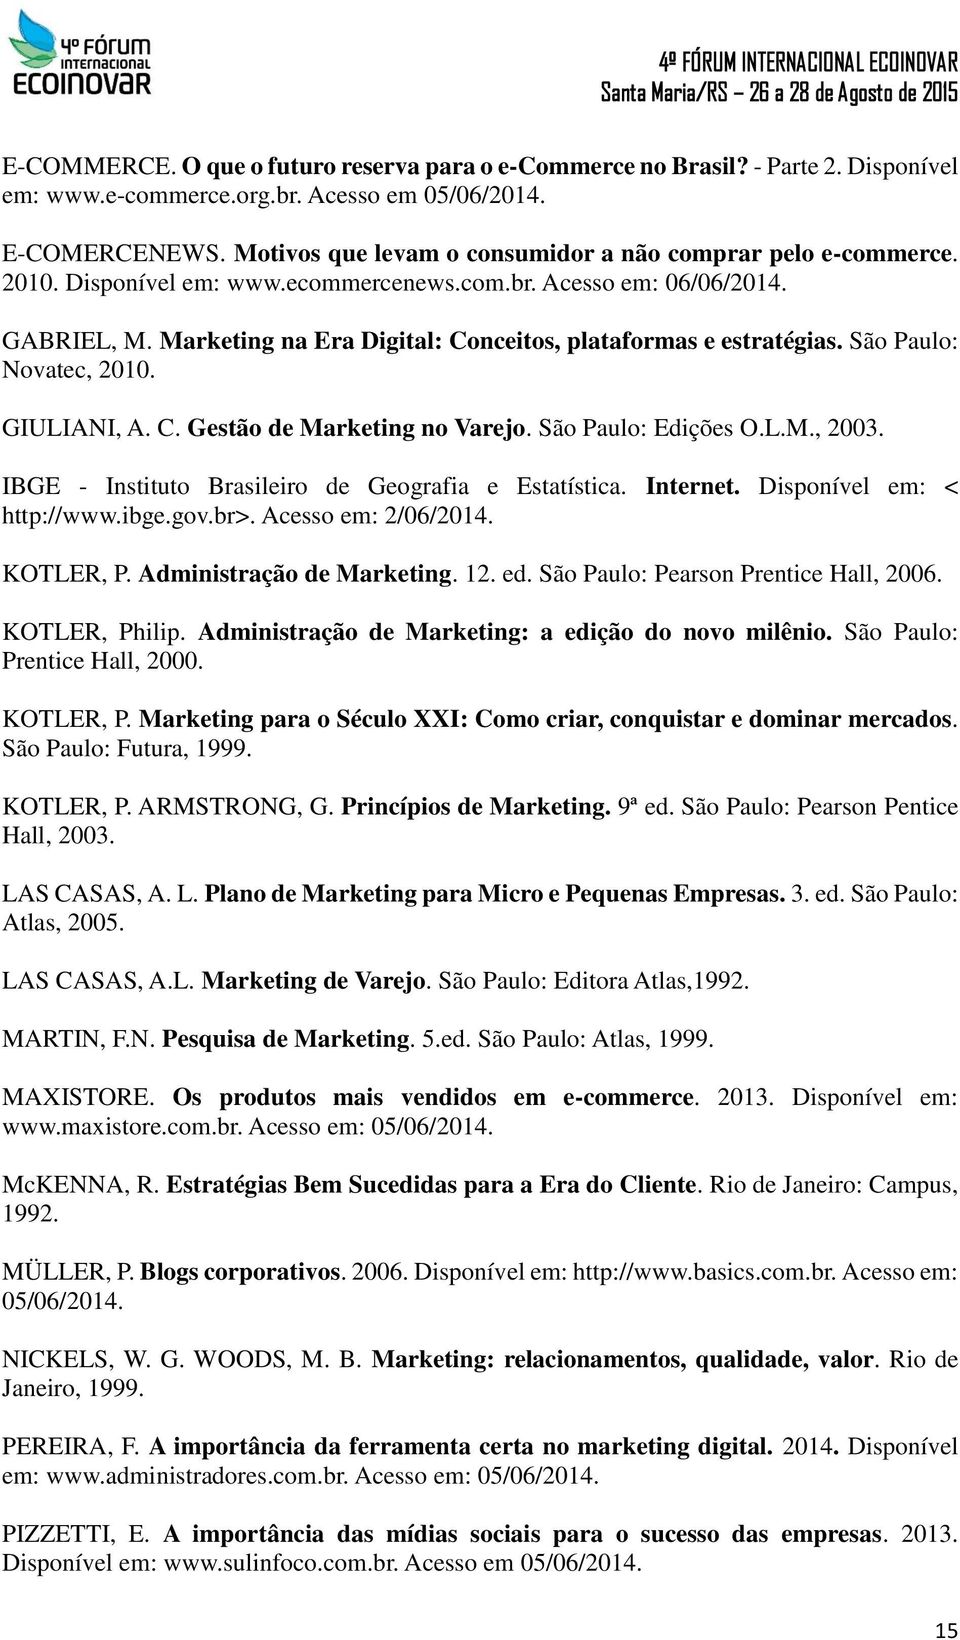 Marketing na Era Digital: Conceitos, plataformas e estratégias. São Paulo: Novatec, 2010. GIULIANI, A. C. Gestão de Marketing no Varejo. São Paulo: Edições O.L.M., 2003.